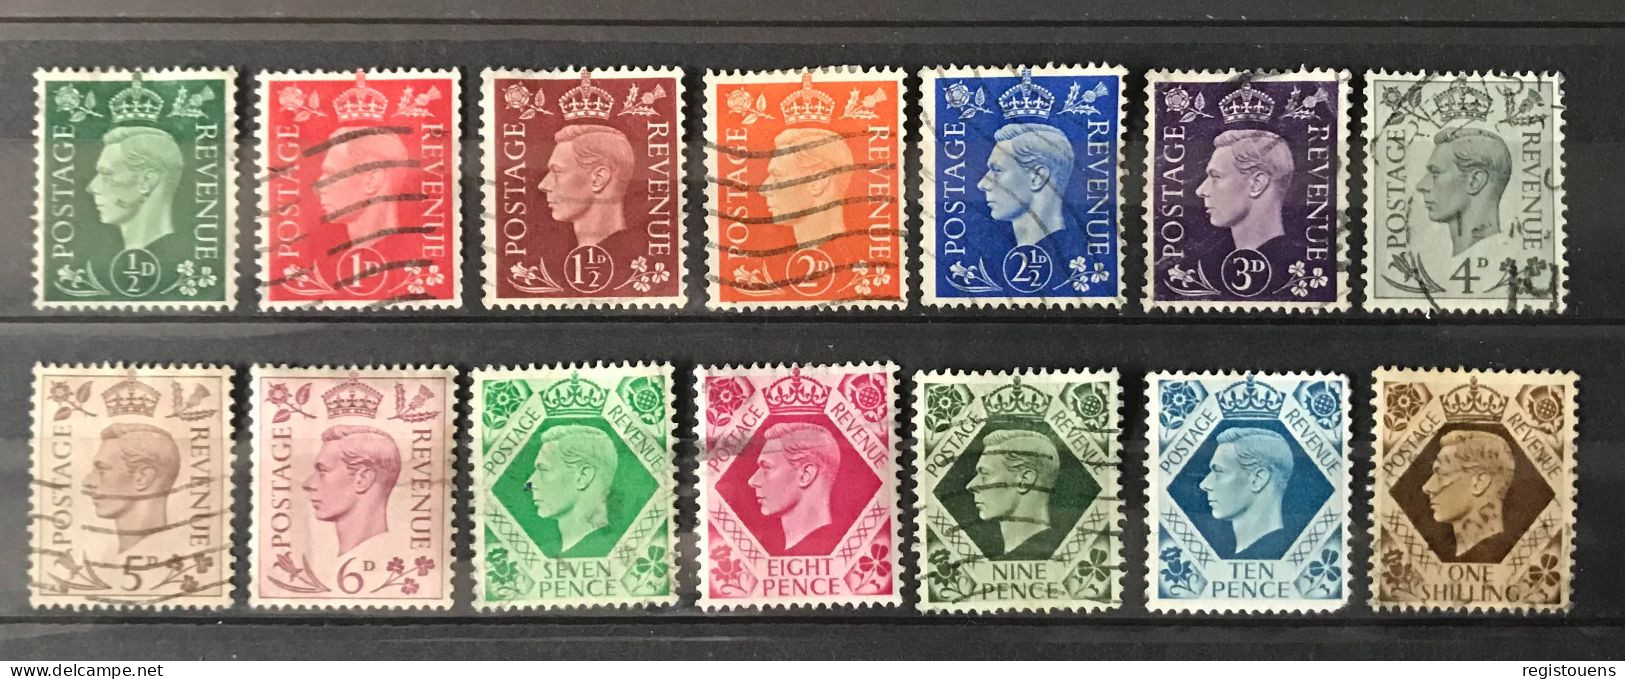 Lot De 14 Timbres Oblitérés Grande Bretagne 1937 - Used Stamps